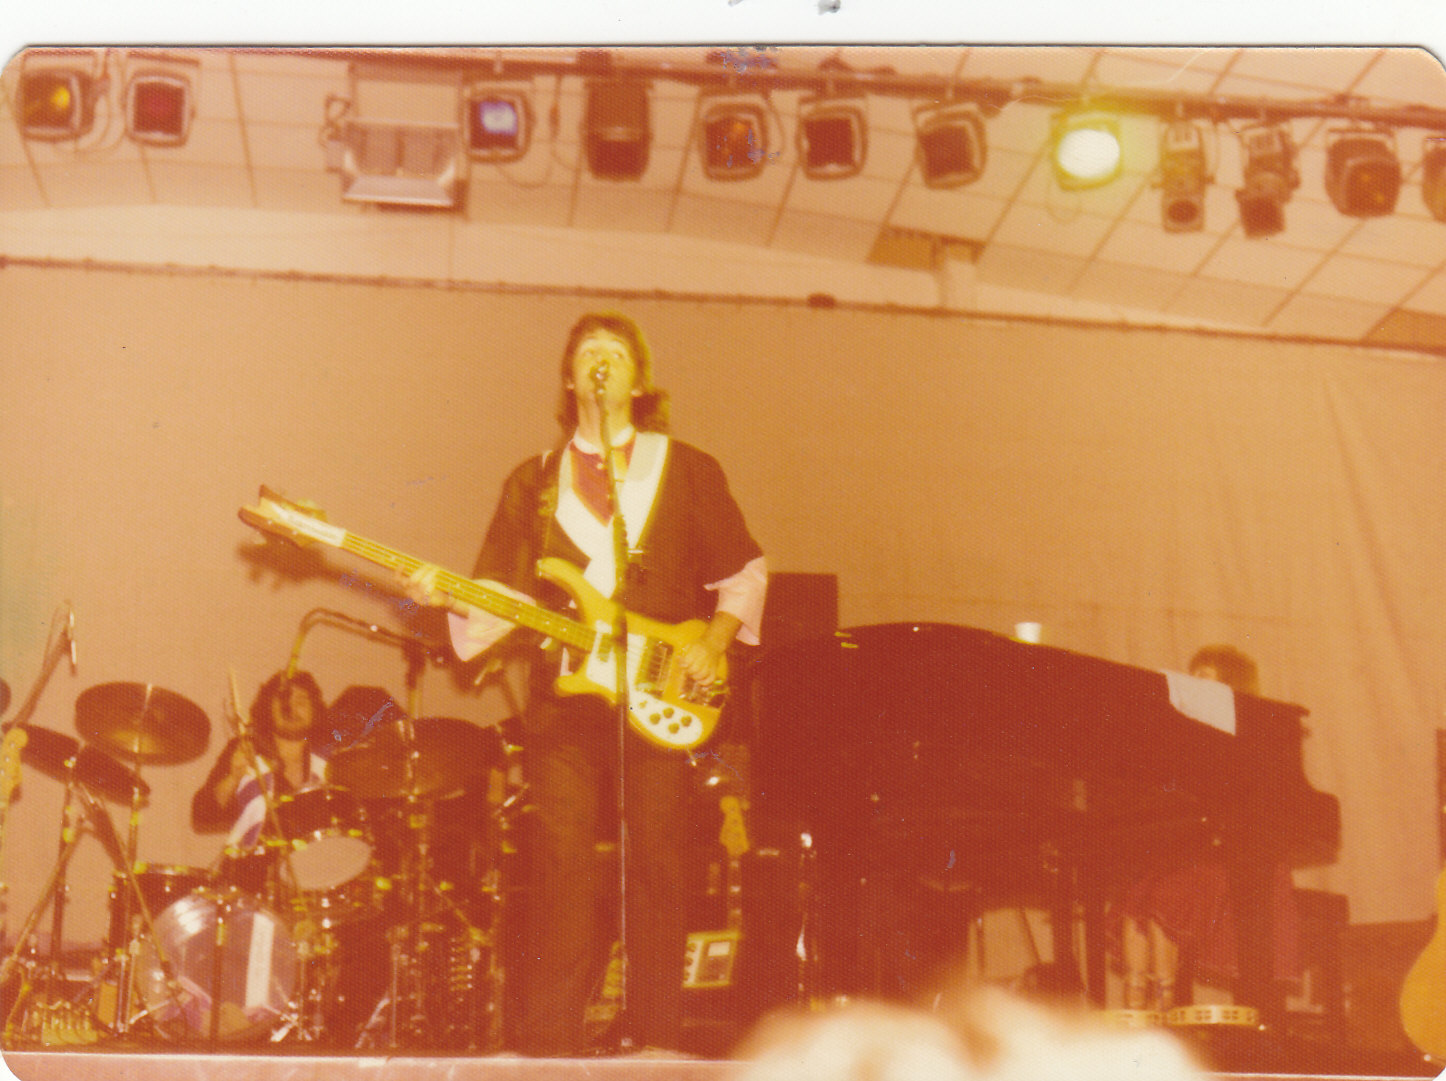 Paul McCartney, live in Adelaide November 1975. Drummer Joe English behind Paul.